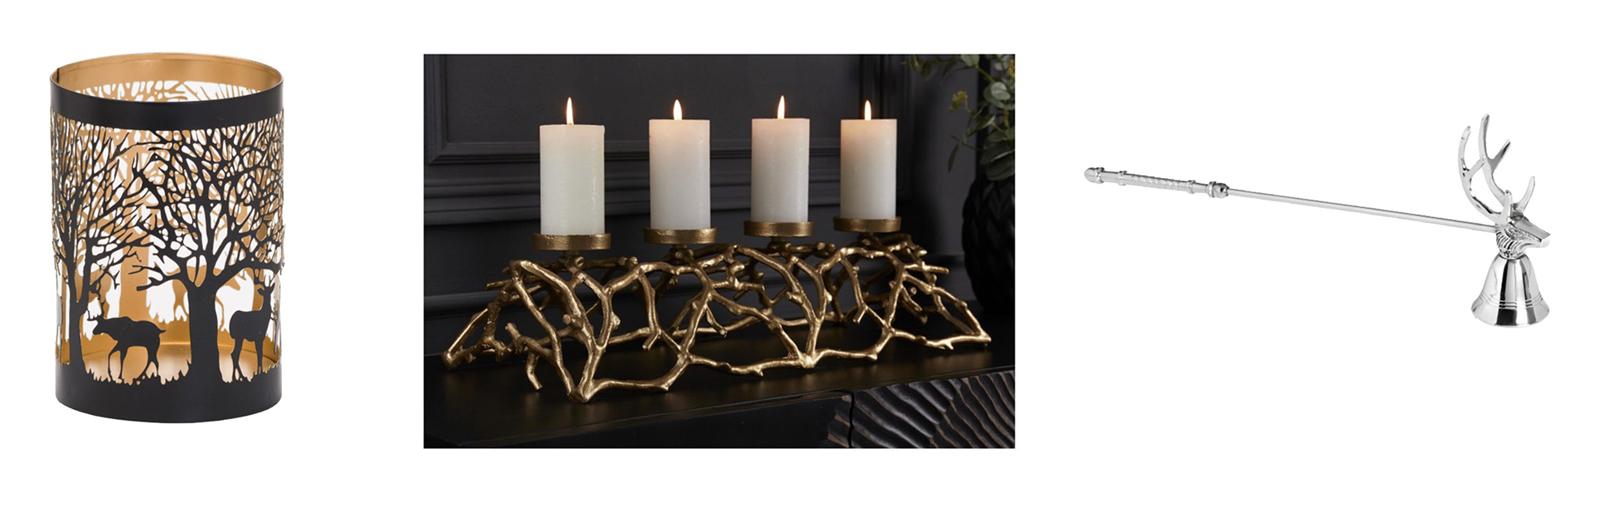 Designová lucerna Torbeo, Kovový svícen na čtyři svíce Cuerna, Stylové zhasínadlo svíček ve tvaru jelena